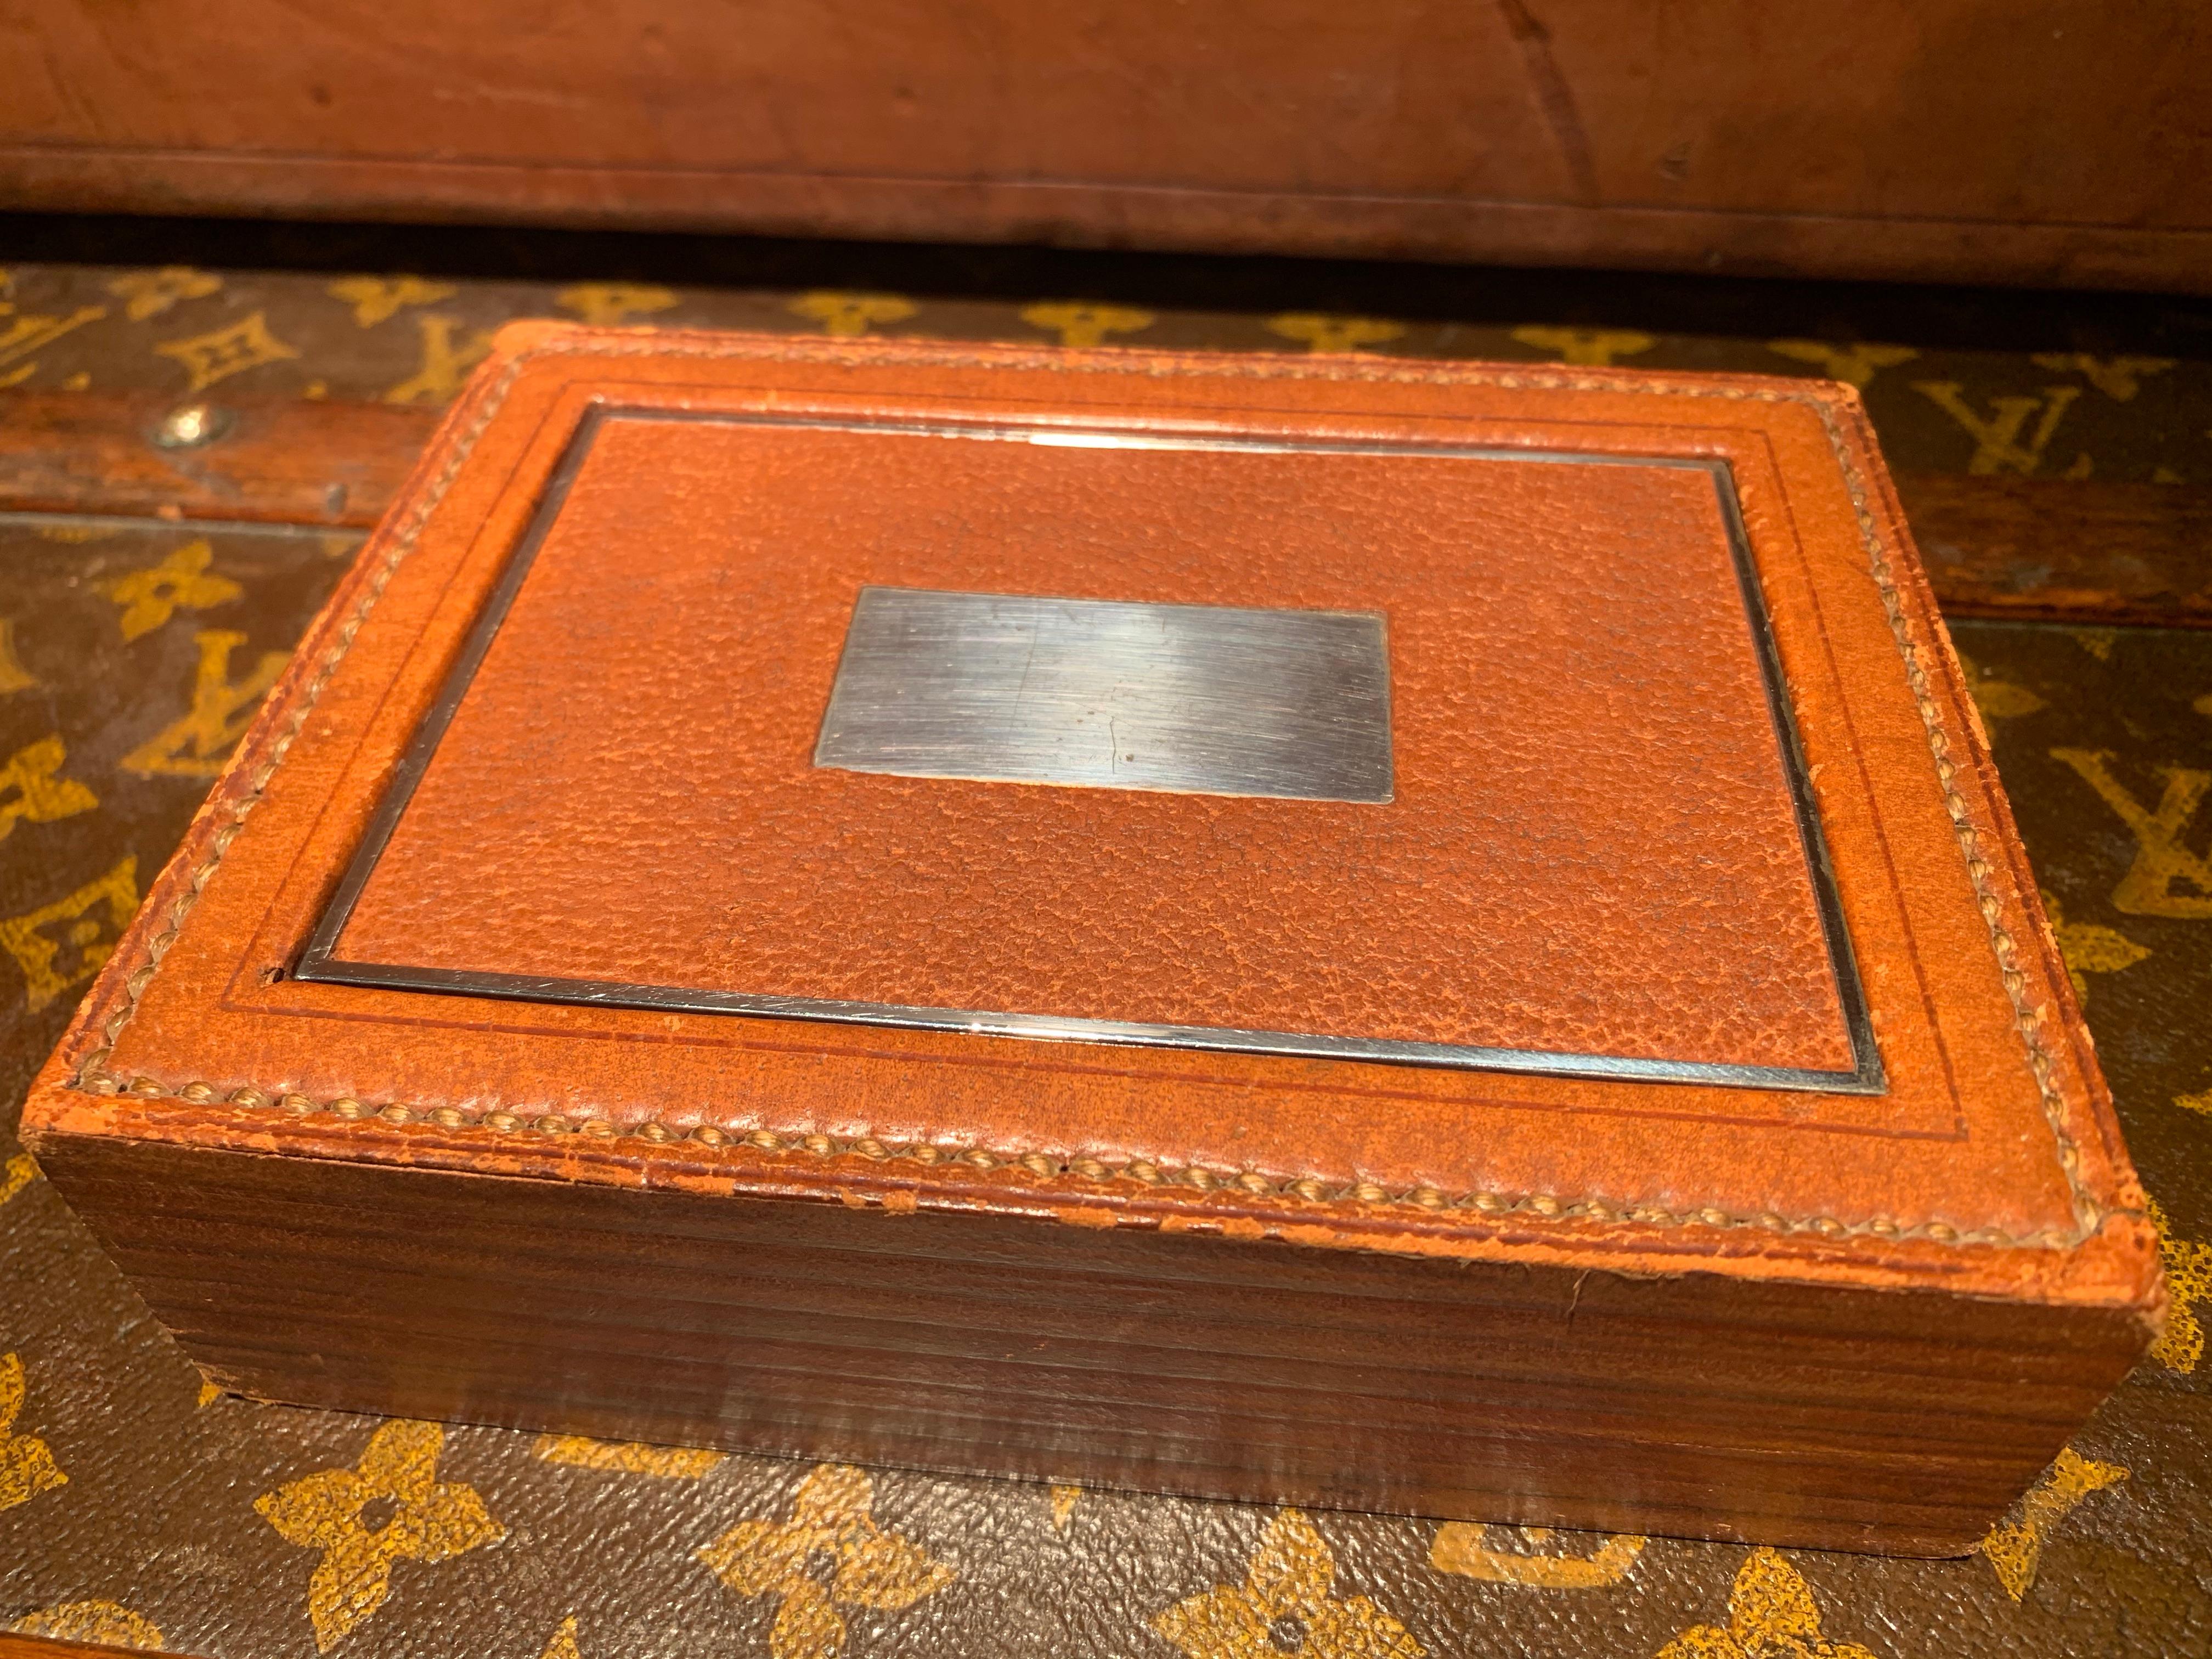 Rare boîte Flip top Hermès des années 1940, conçue par Paul Dupré-Lafon (1900-1971), utilisée pour ranger les cigarettes.

Cuir marron clair avec surpiqûres sellier à l'extérieur et bois acajou à l'intérieur. Le couvercle est en métal chromé